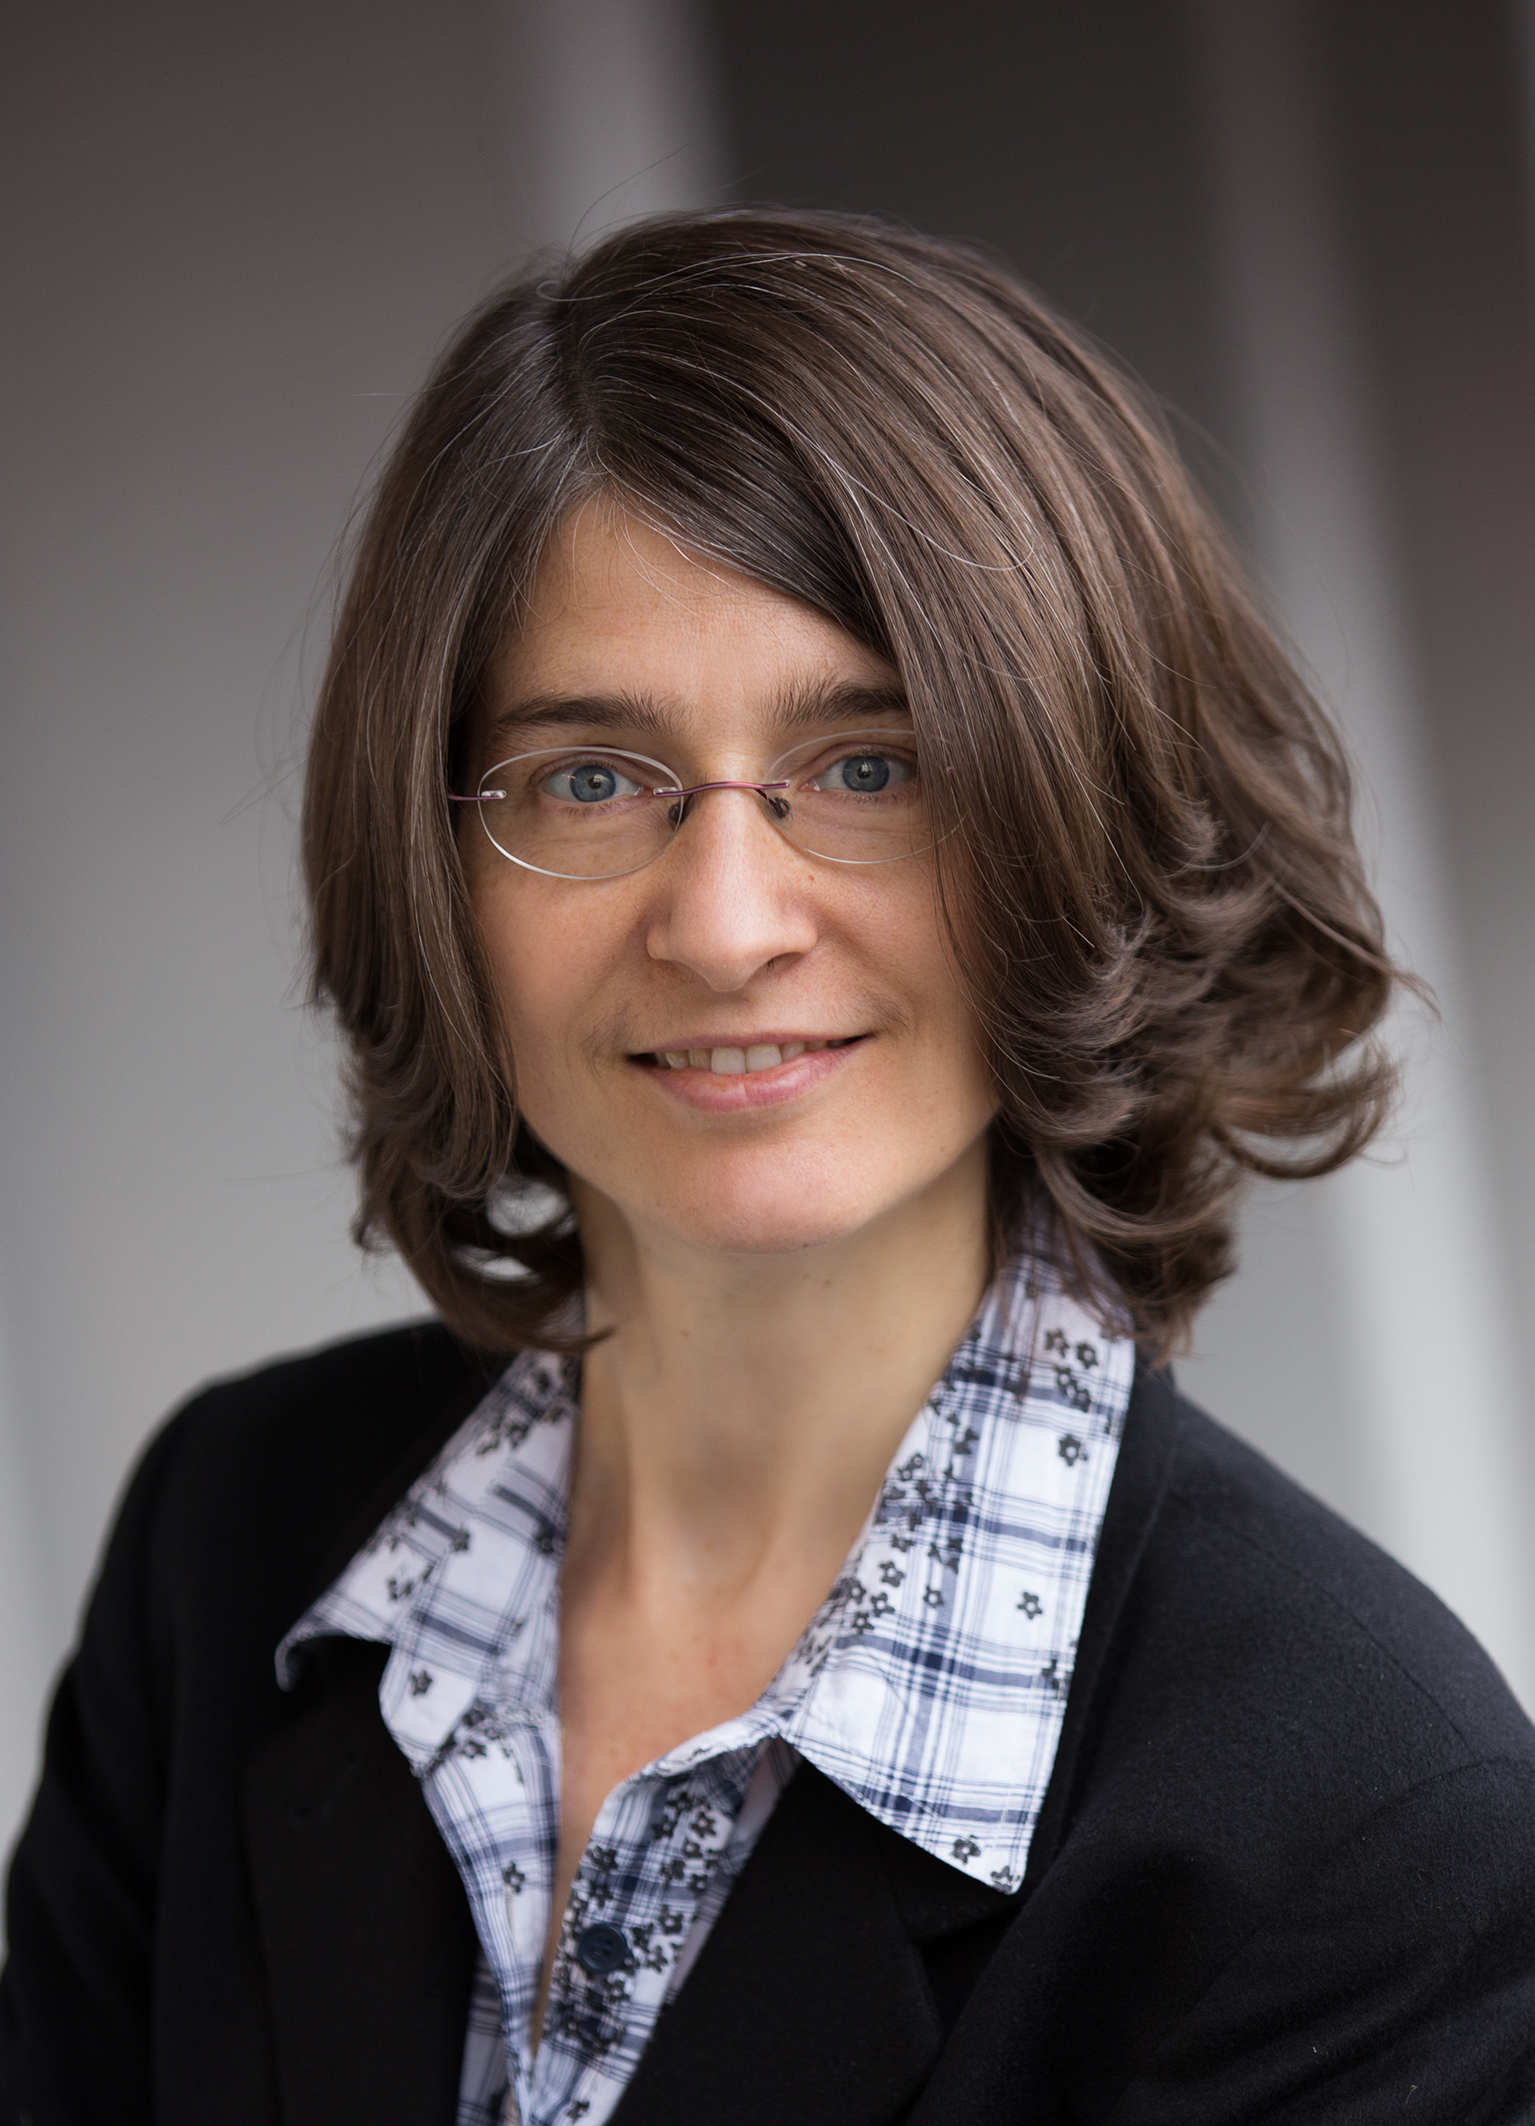 Univ.-Prof. Dr. Angela Risch